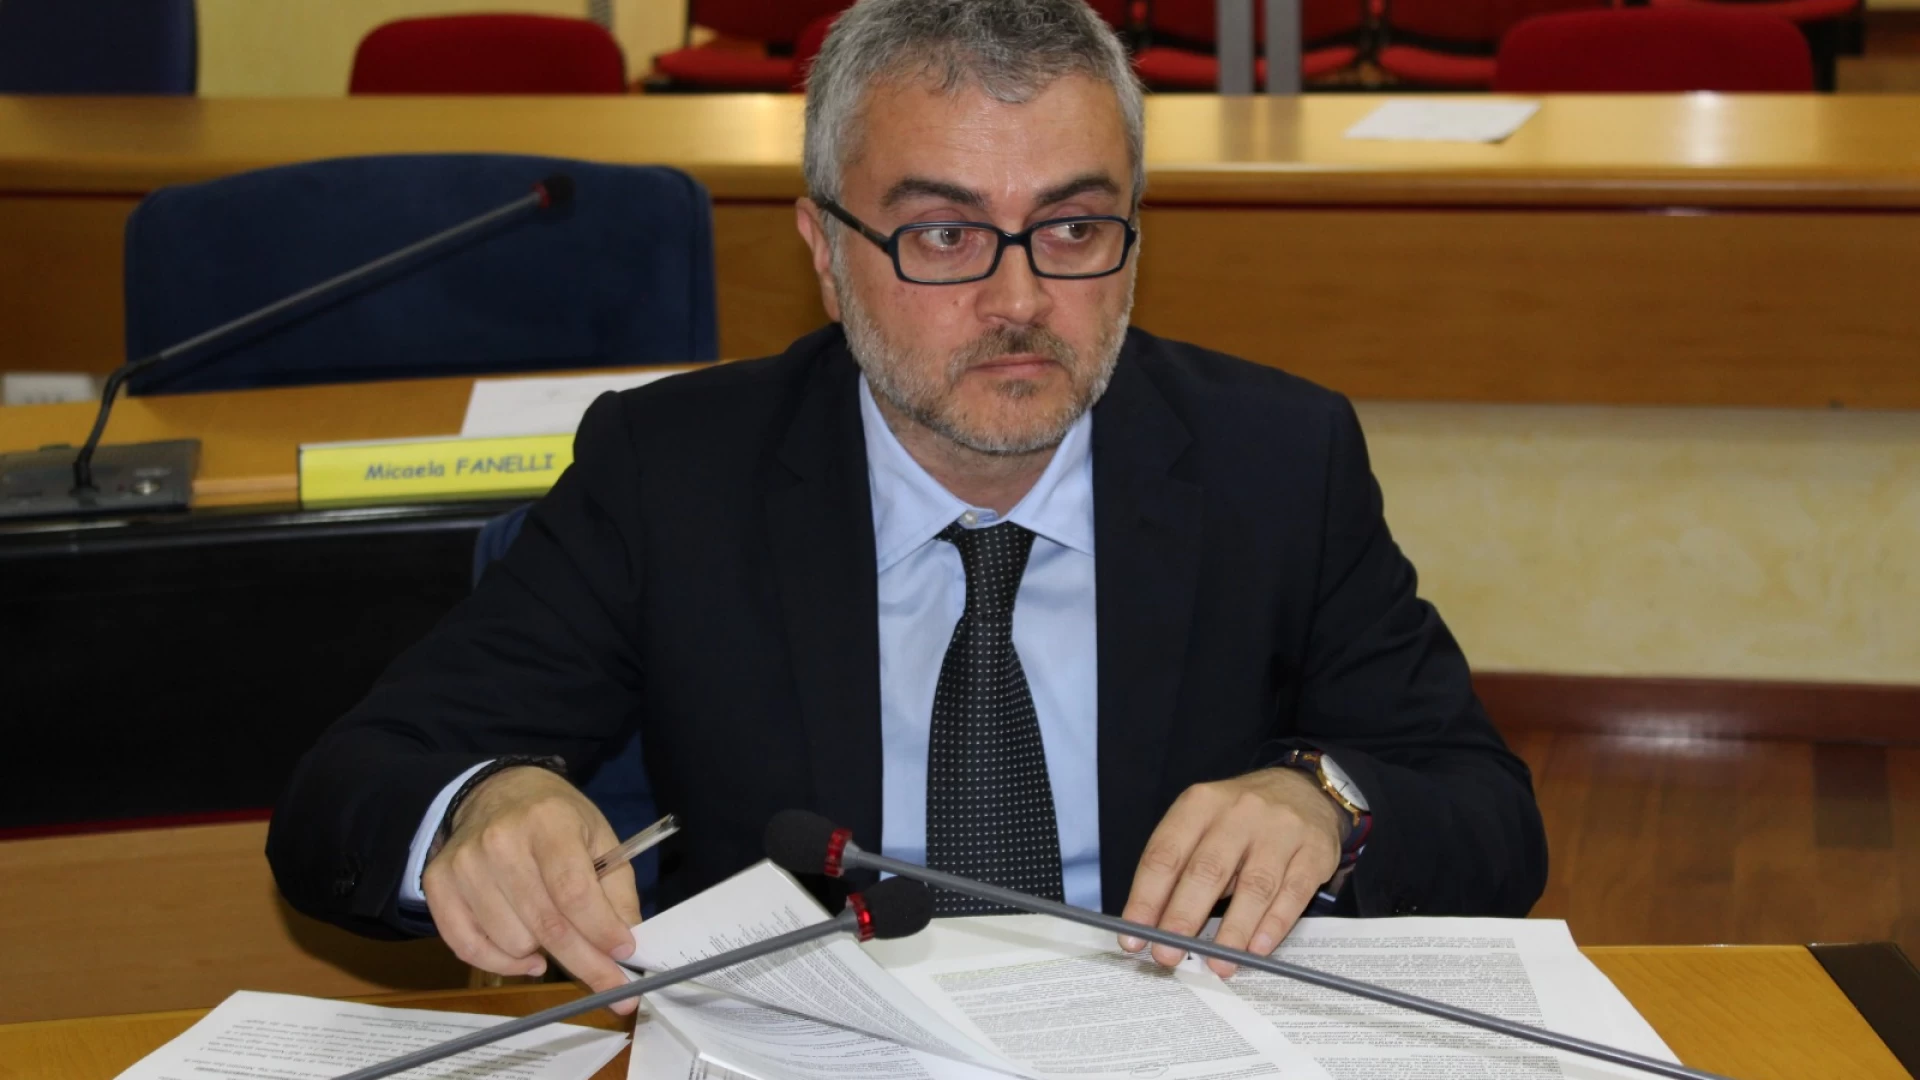 Metanodotti, Fabio De Chirico-M5S: “Bloccata la manina delle lobbies. Cittadini esercitino loro diritto su bosco Corundoli”.